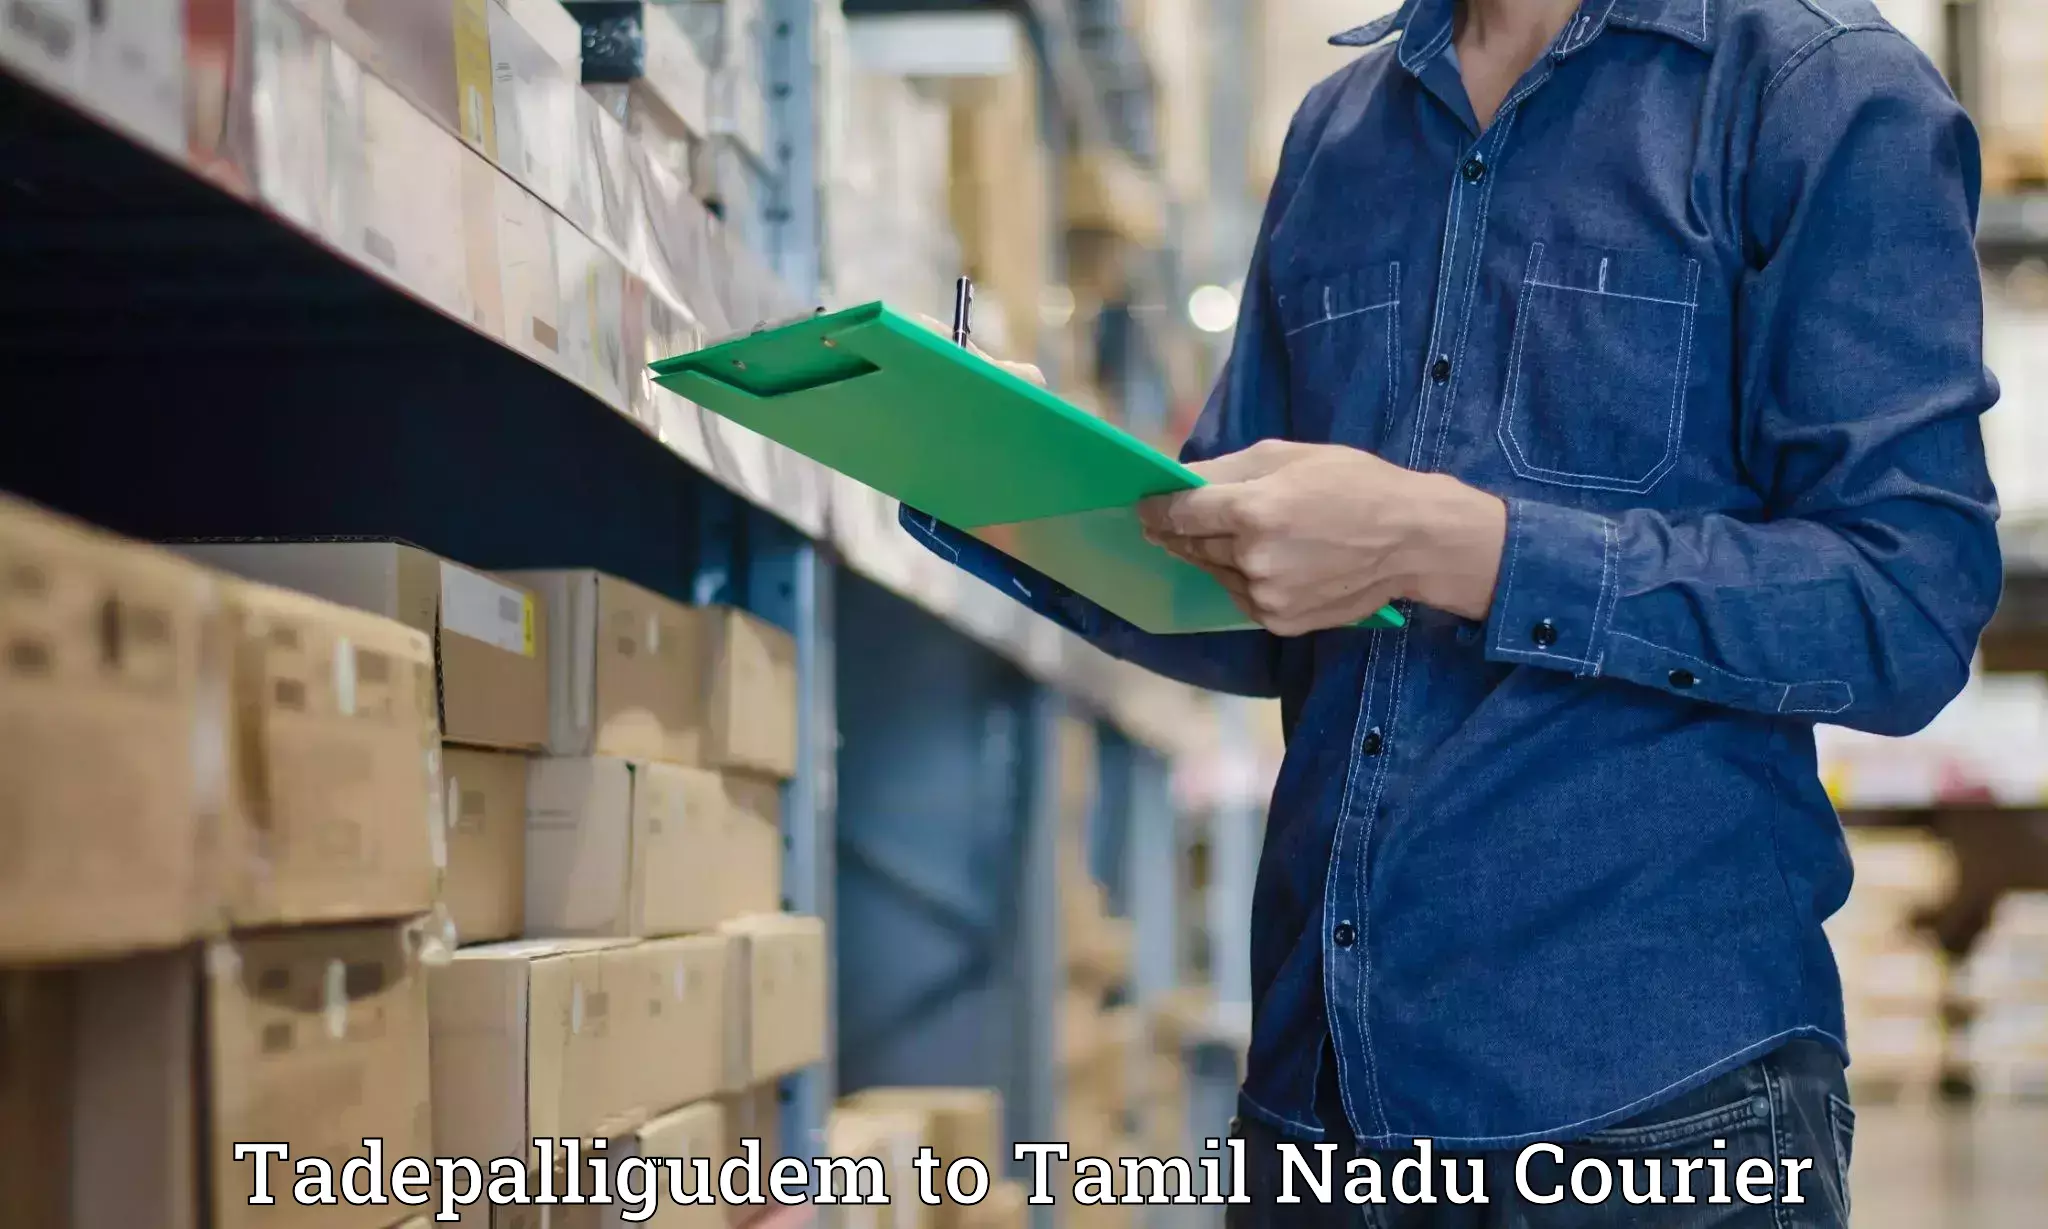 Luggage transport operations Tadepalligudem to Tamil Nadu